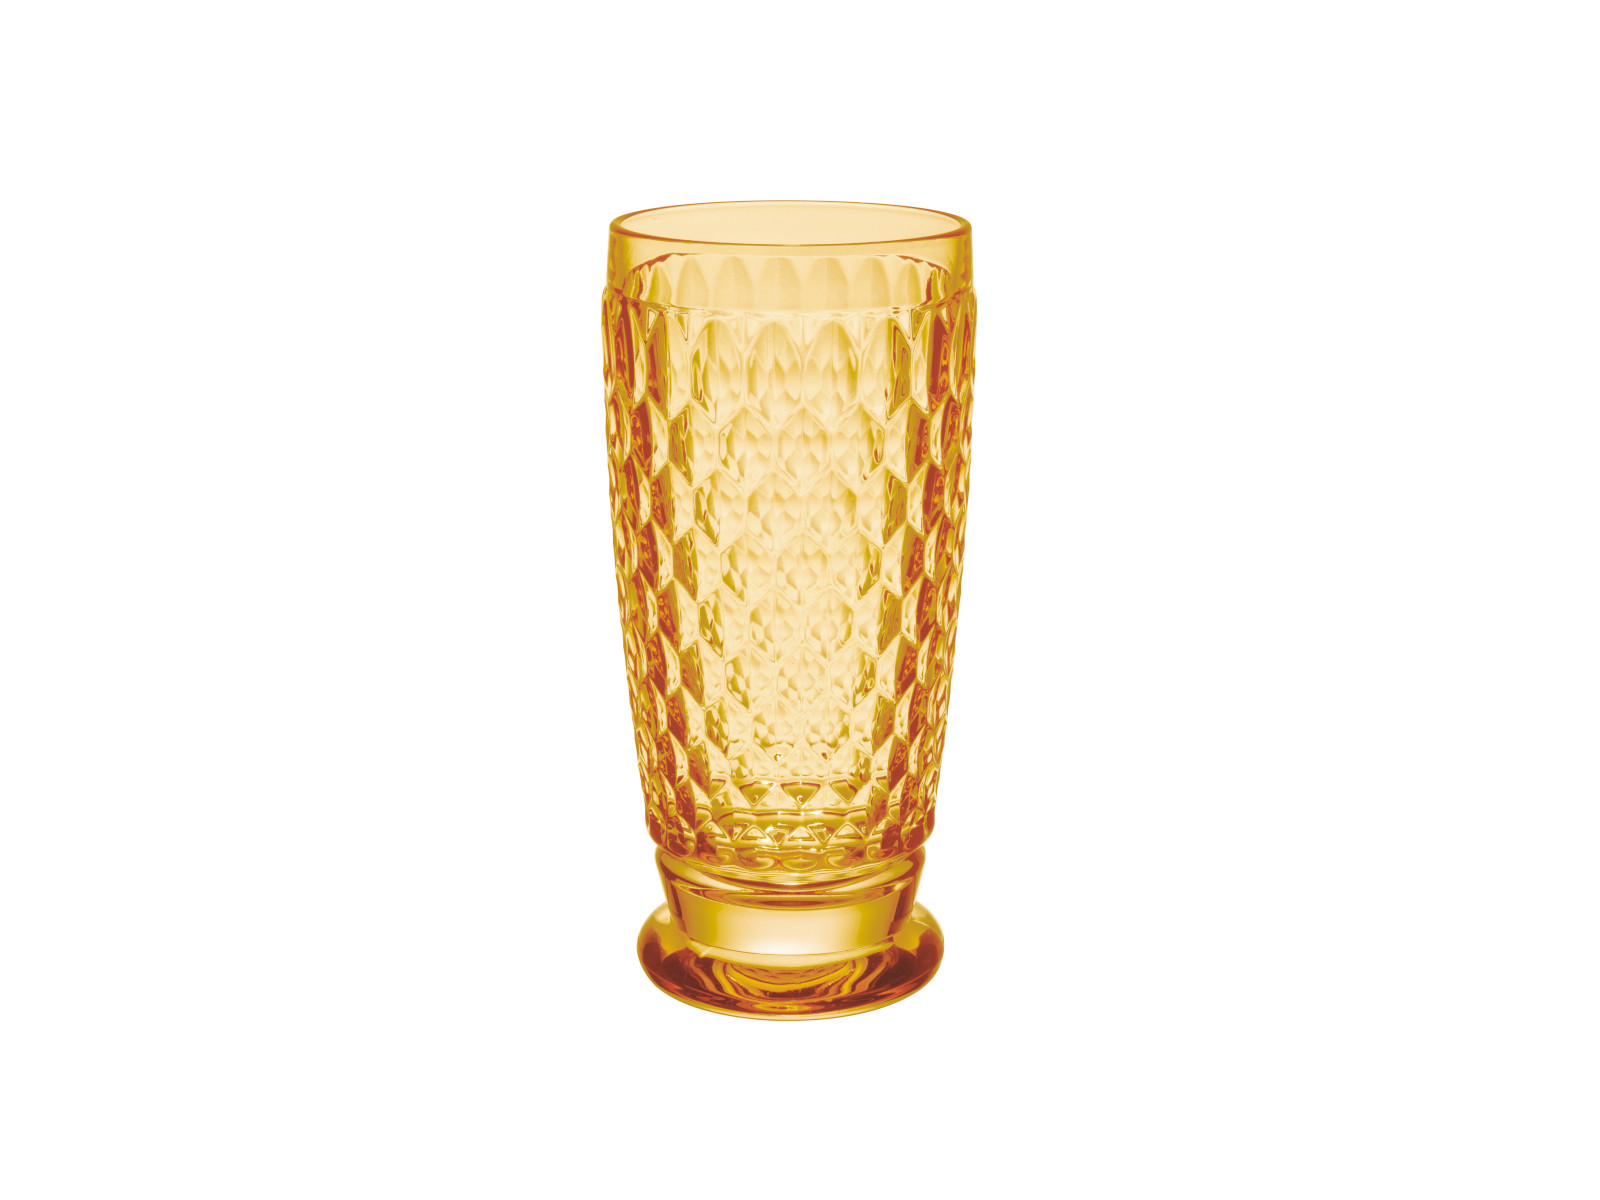 Villeroy & Boch Boston Saffron Longdrinkglas gelb 0,3l